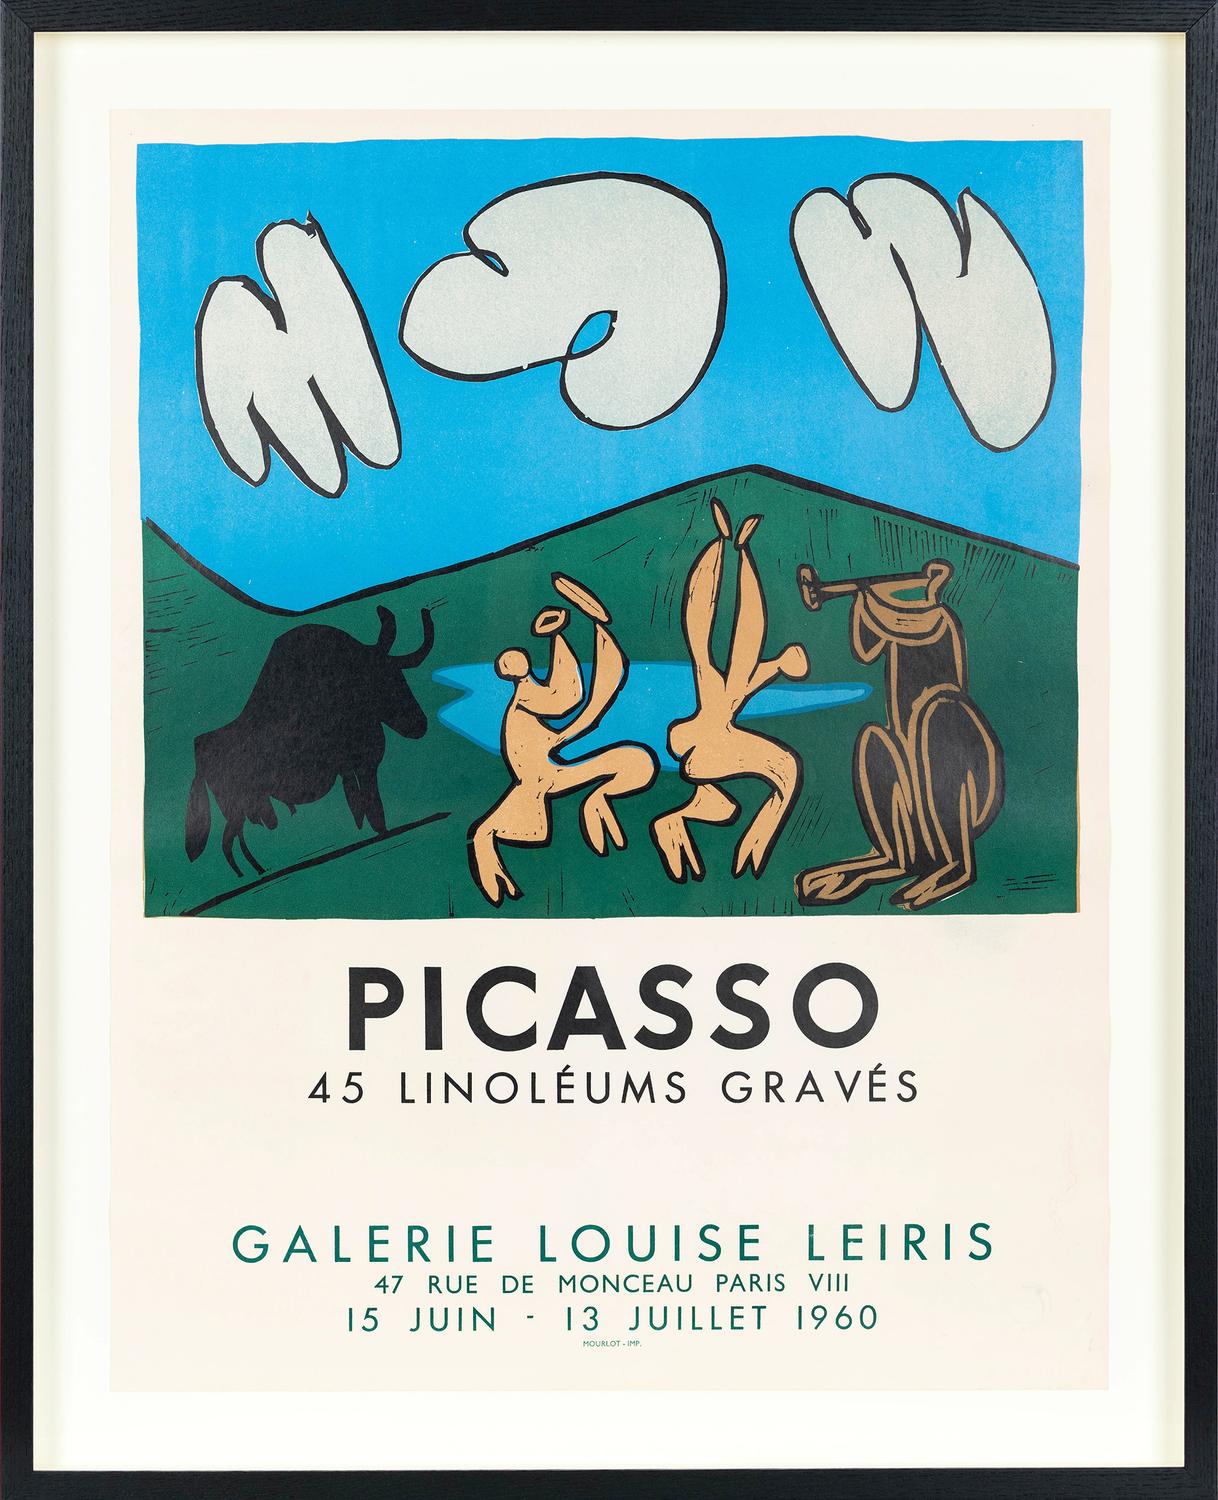 45 Linoleums Gravés, 1960